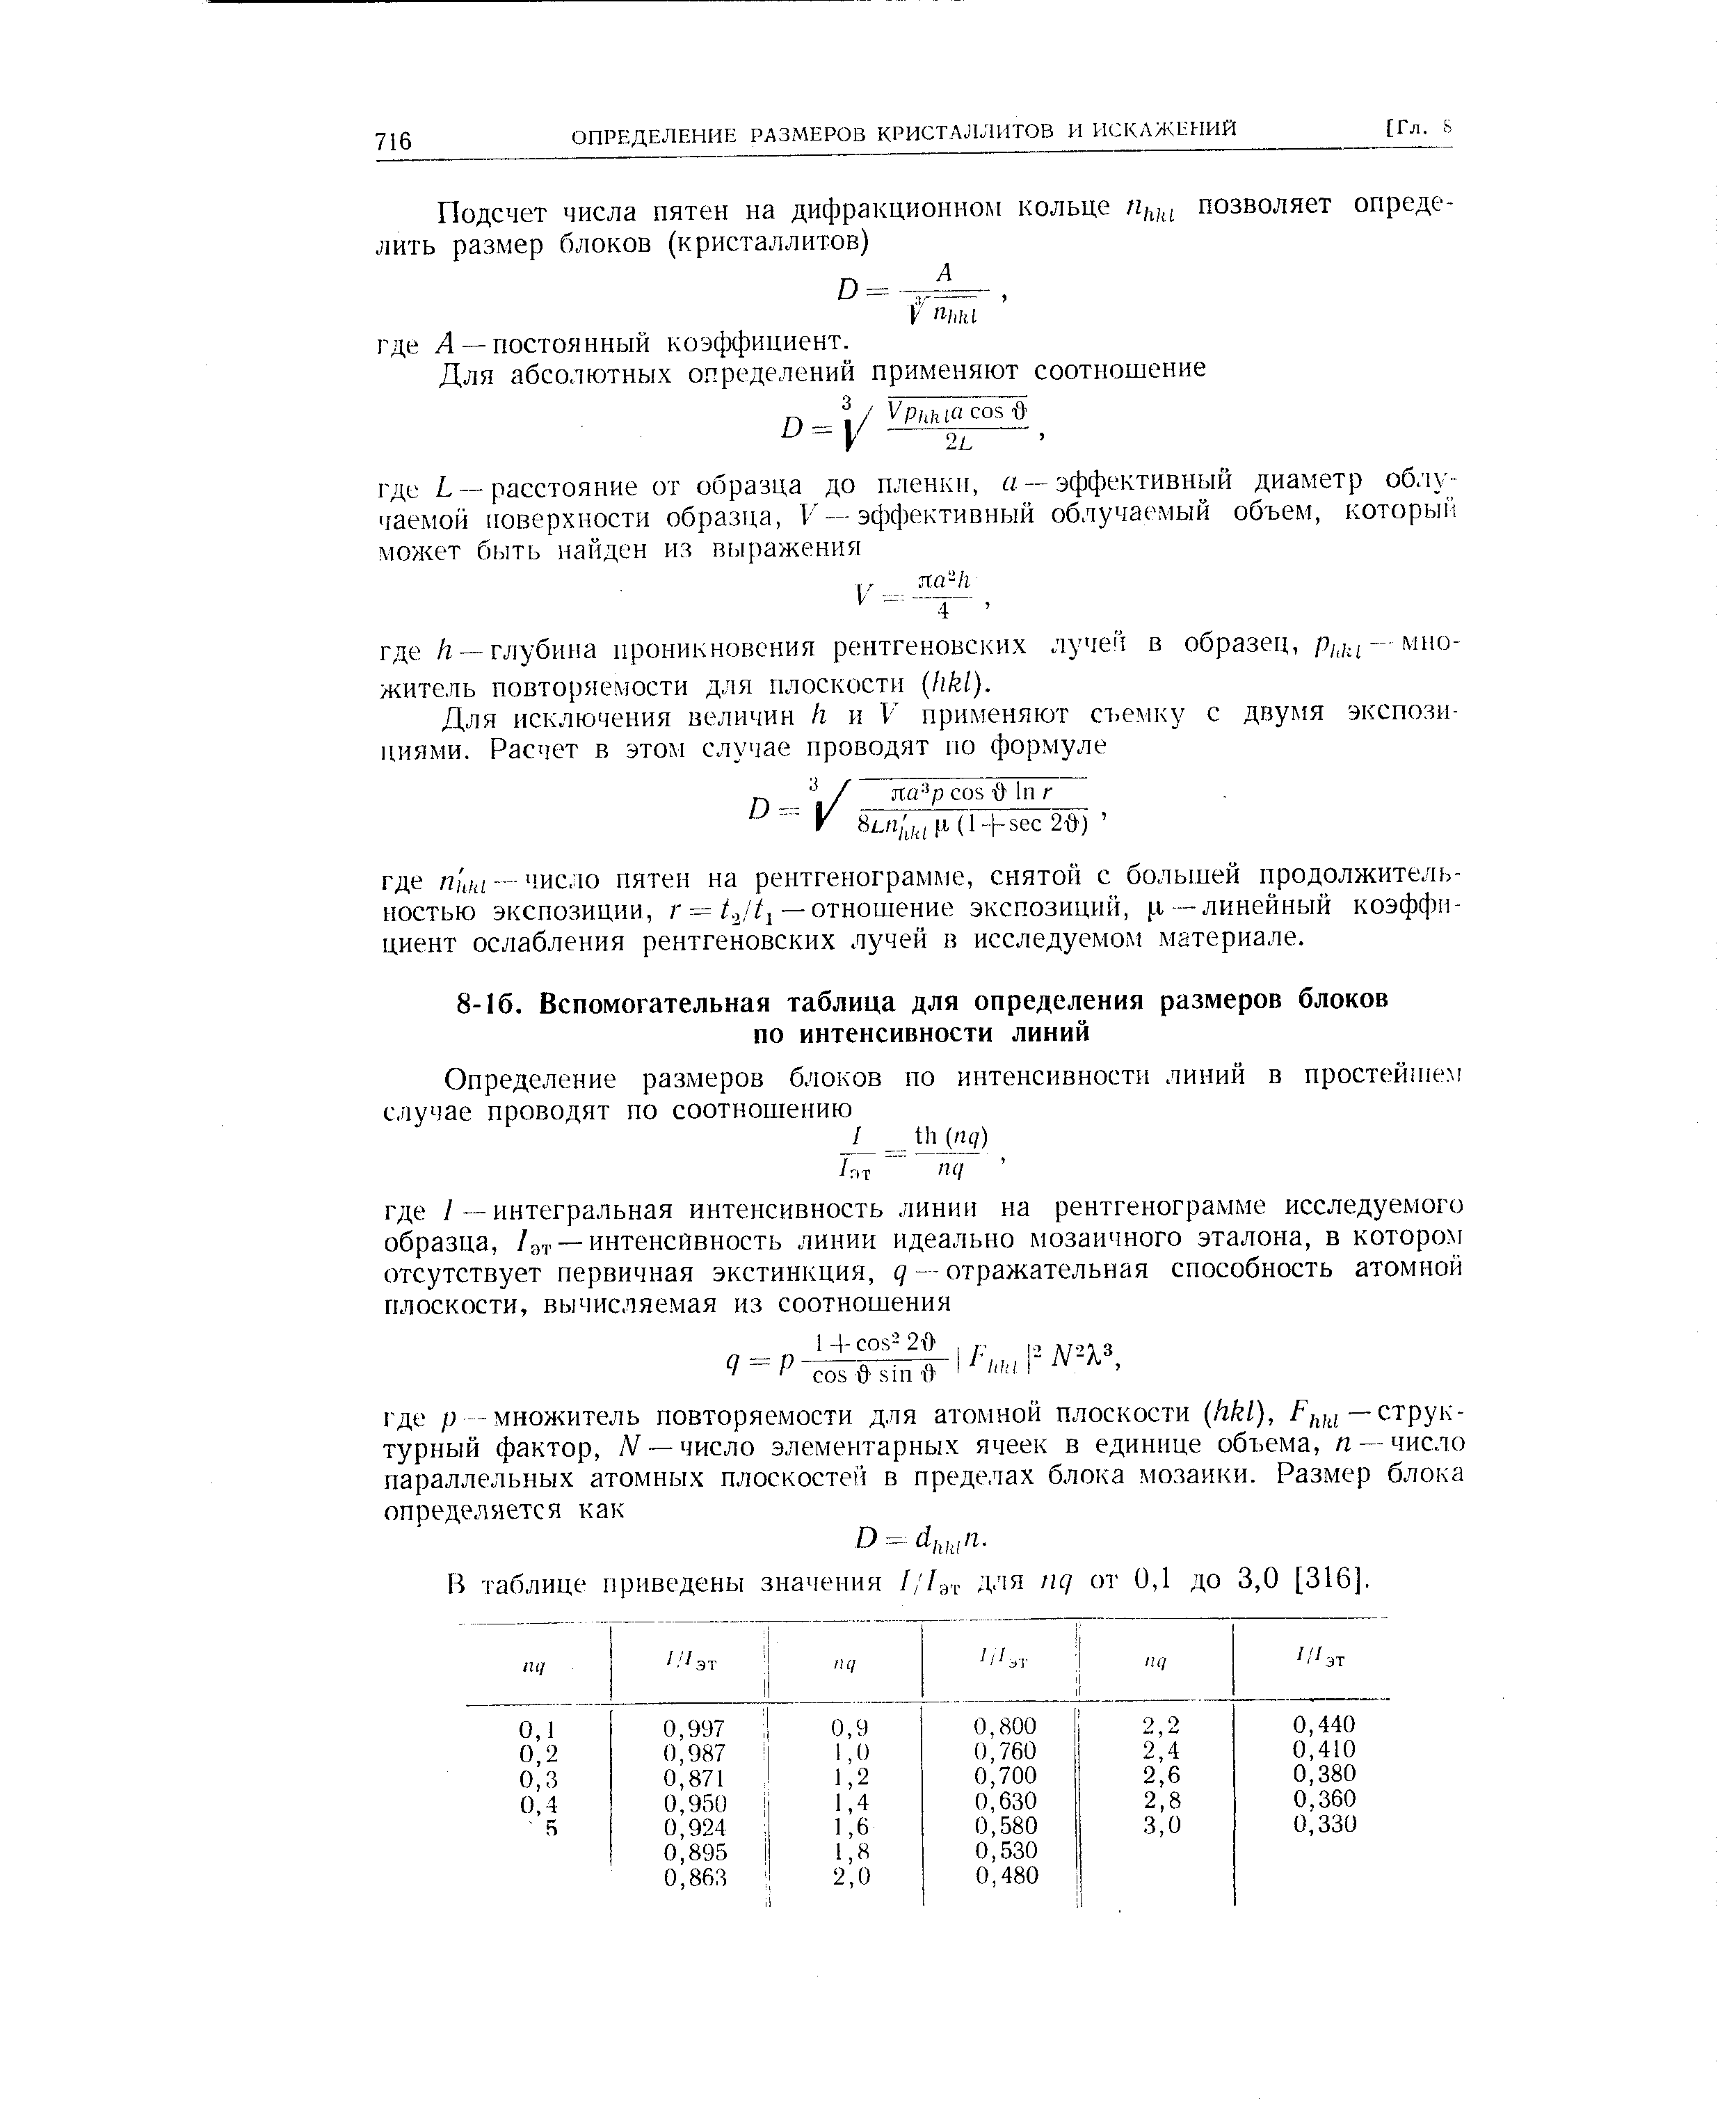 В таблице приведены значения ///эт для nq от 0,1 до 3,0 [316].
